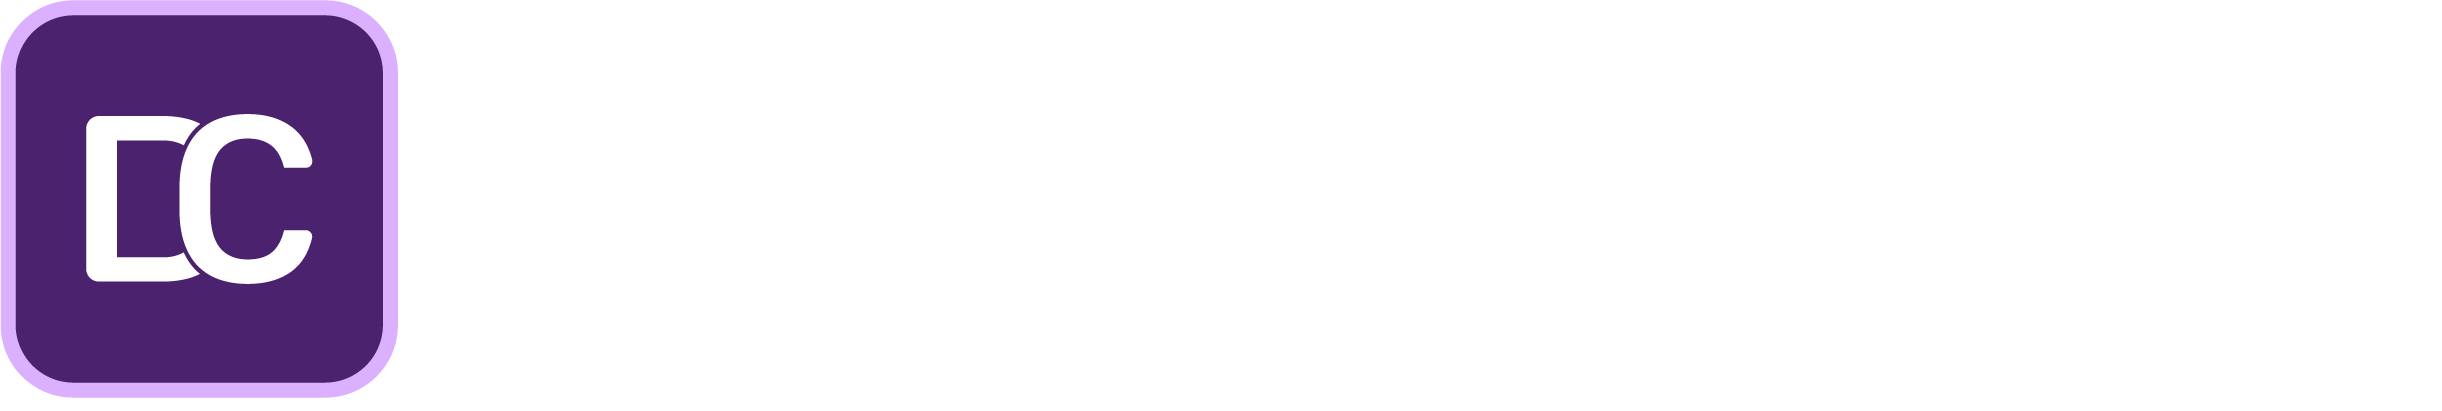 DeepCatchC_logo